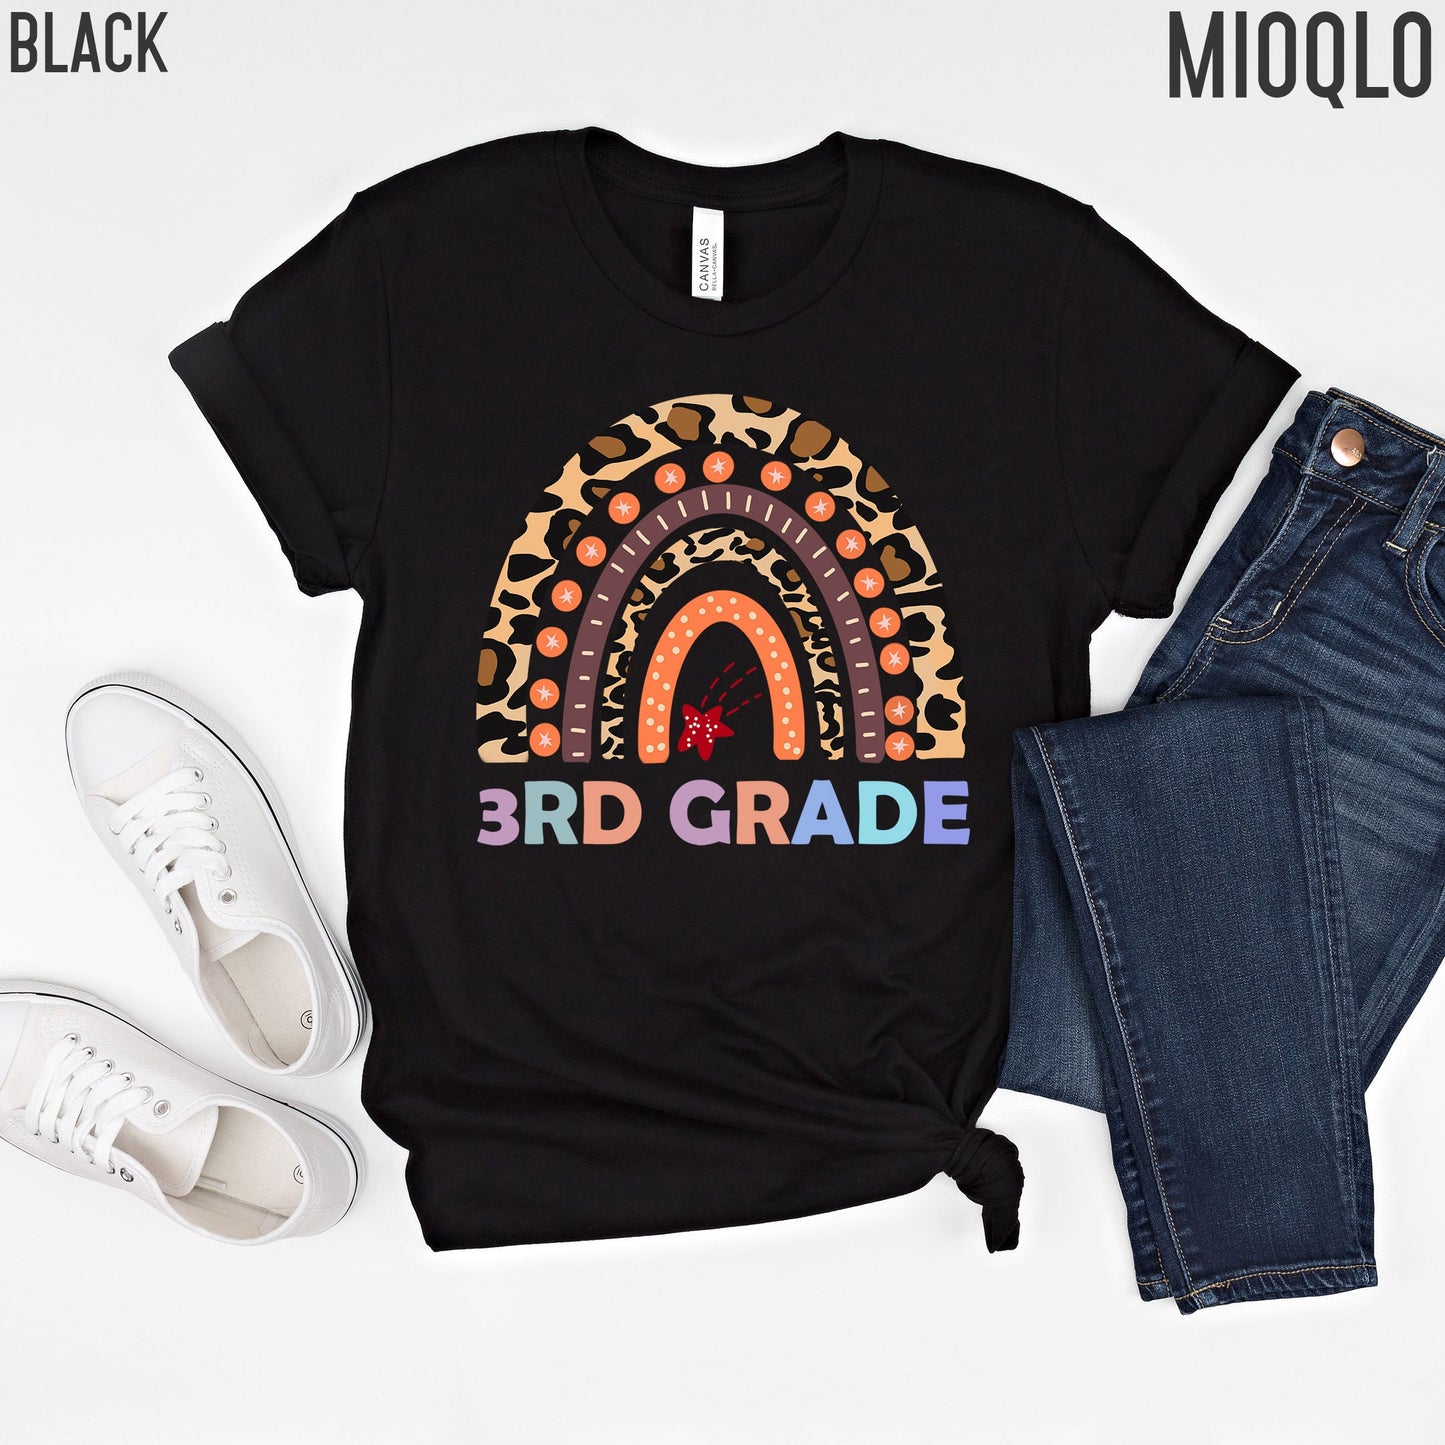 3rd Grade Teacher Shirt, Third Grade Teacher Shirt, 3rd Grade Teacher, Third Grade Graduation Gifts, Third Grade Teacher, 3rd Grade Shirt